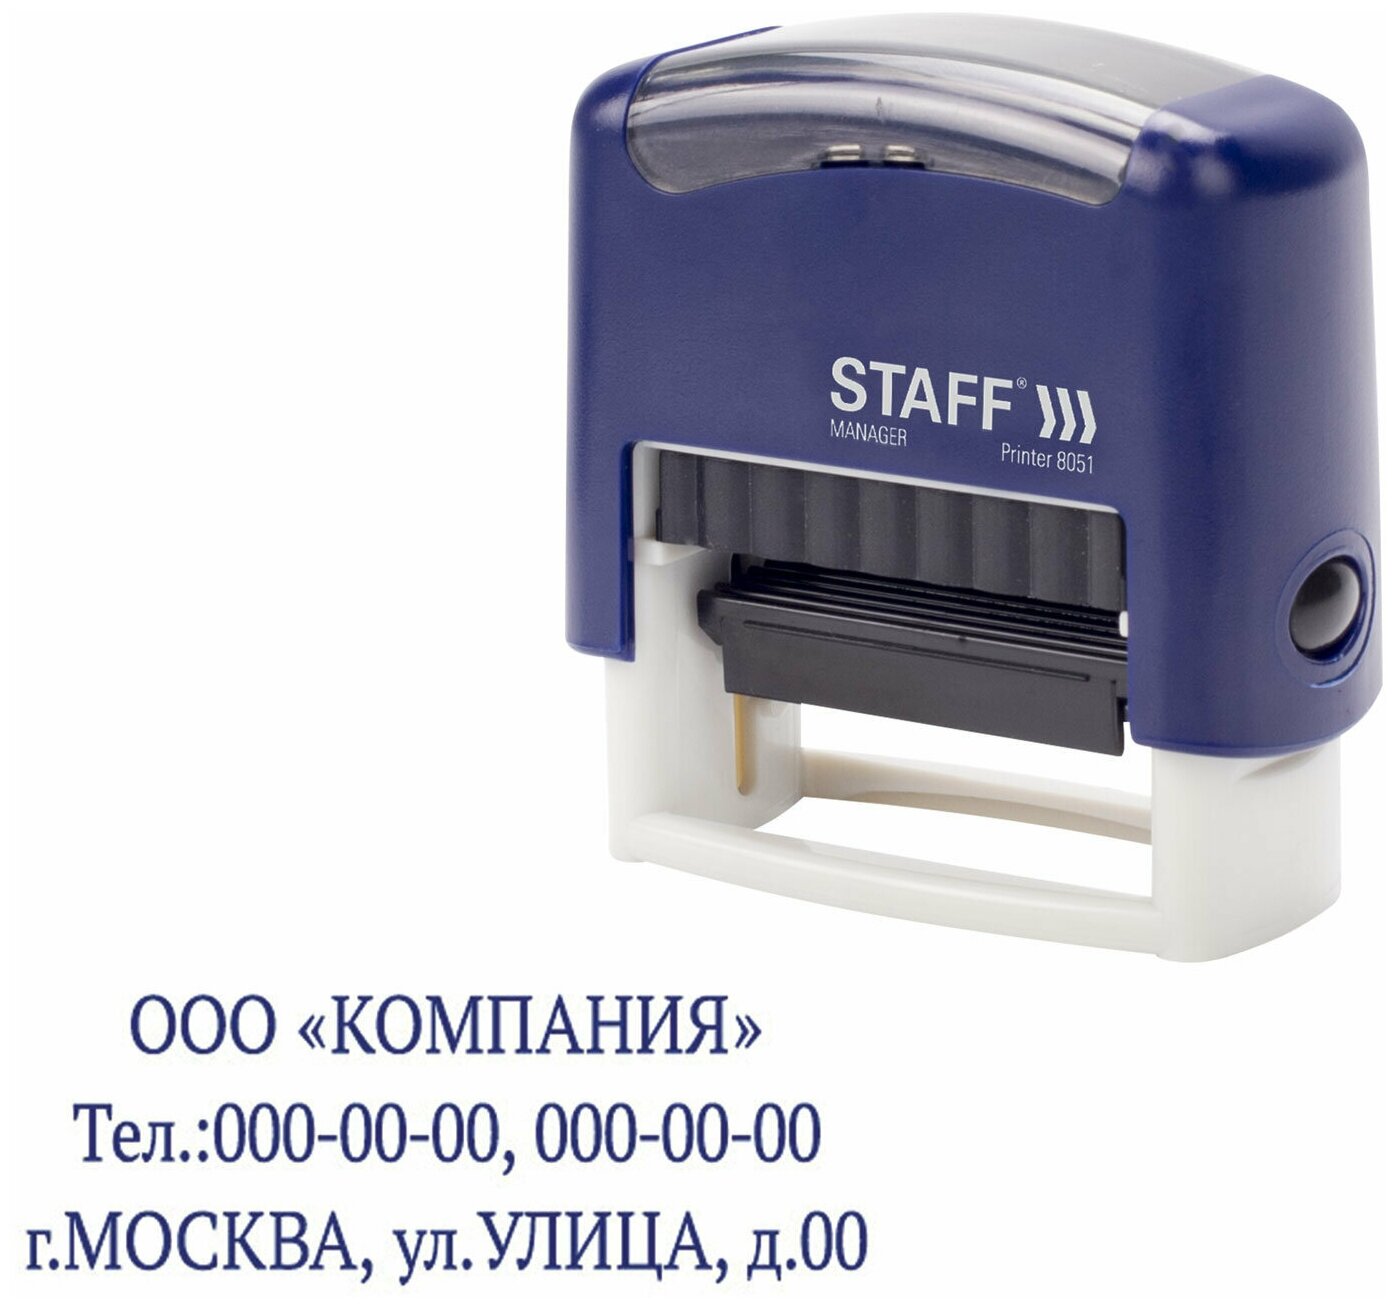 Штамп самонаборный 3-строчный STAFF, оттиск 38х14 мм, "Printer 8051", касса В комплекте, 237423